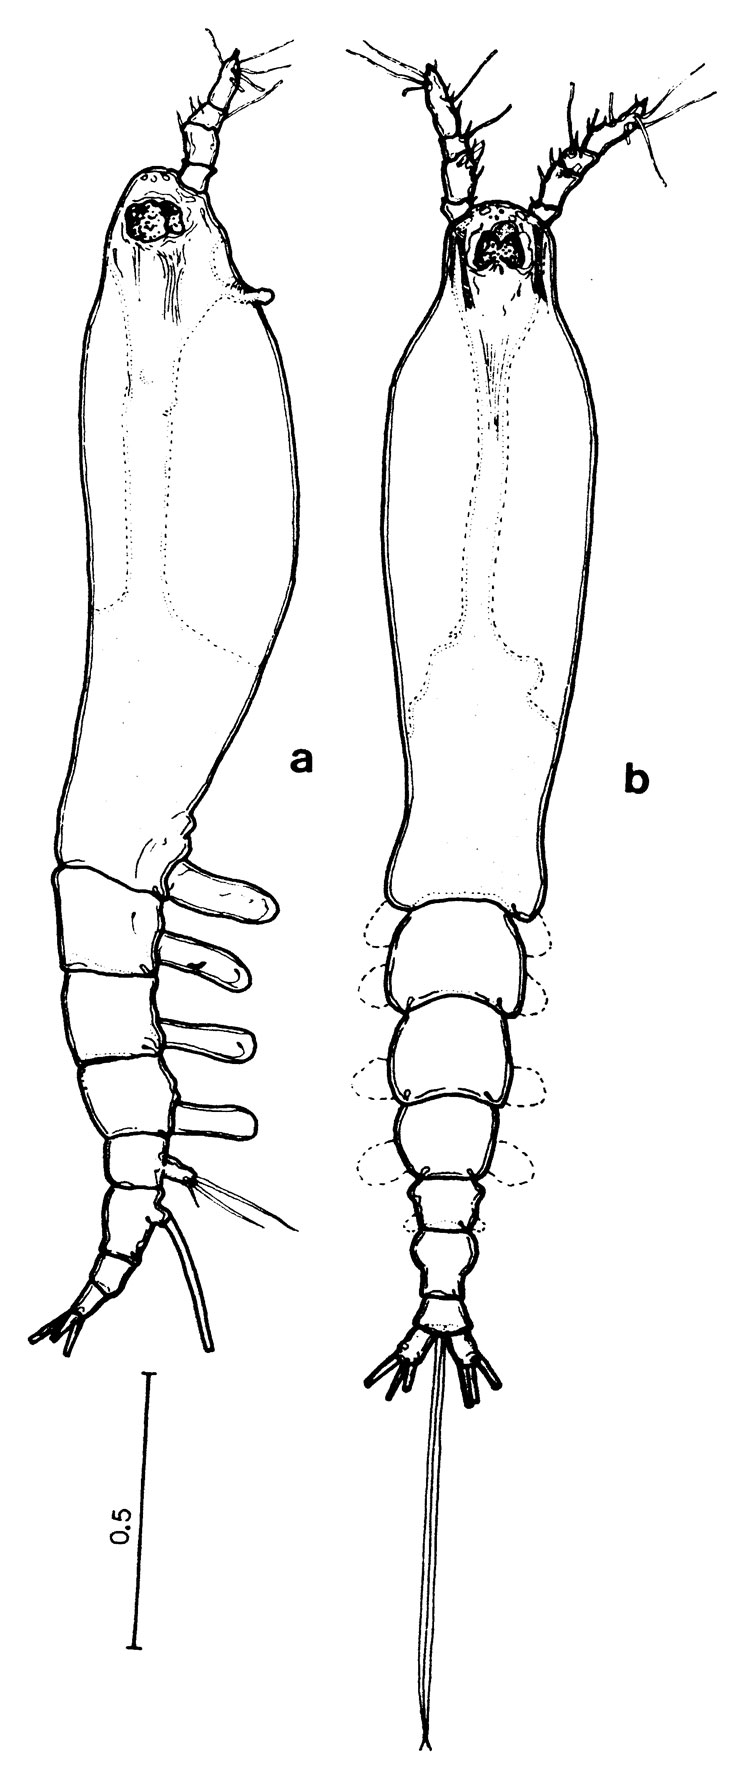 Espèce Cymbasoma boxshalli - Planche 1 de figures morphologiques